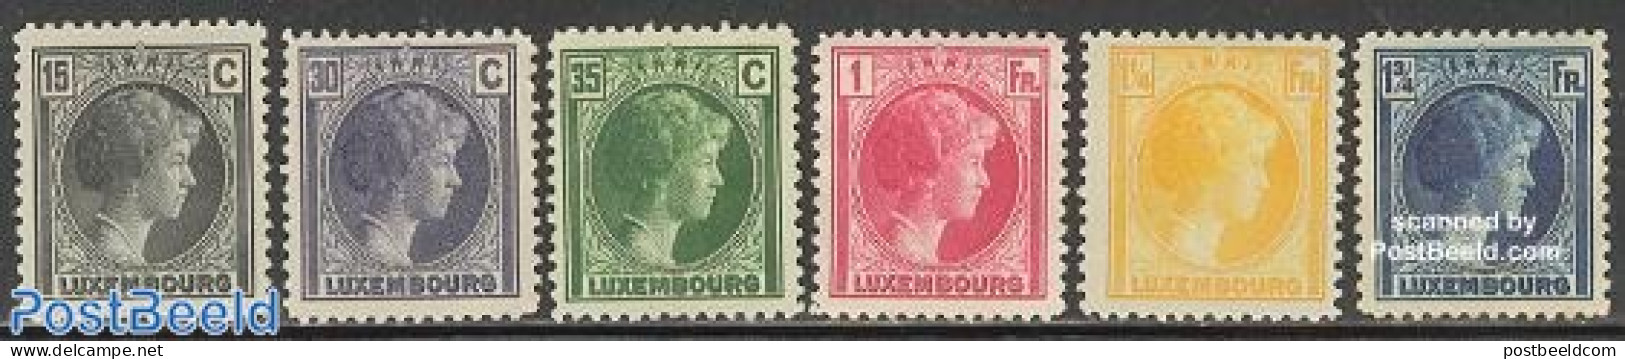 Luxemburg 1930 Definitives 6v, Unused (hinged) - Nuevos